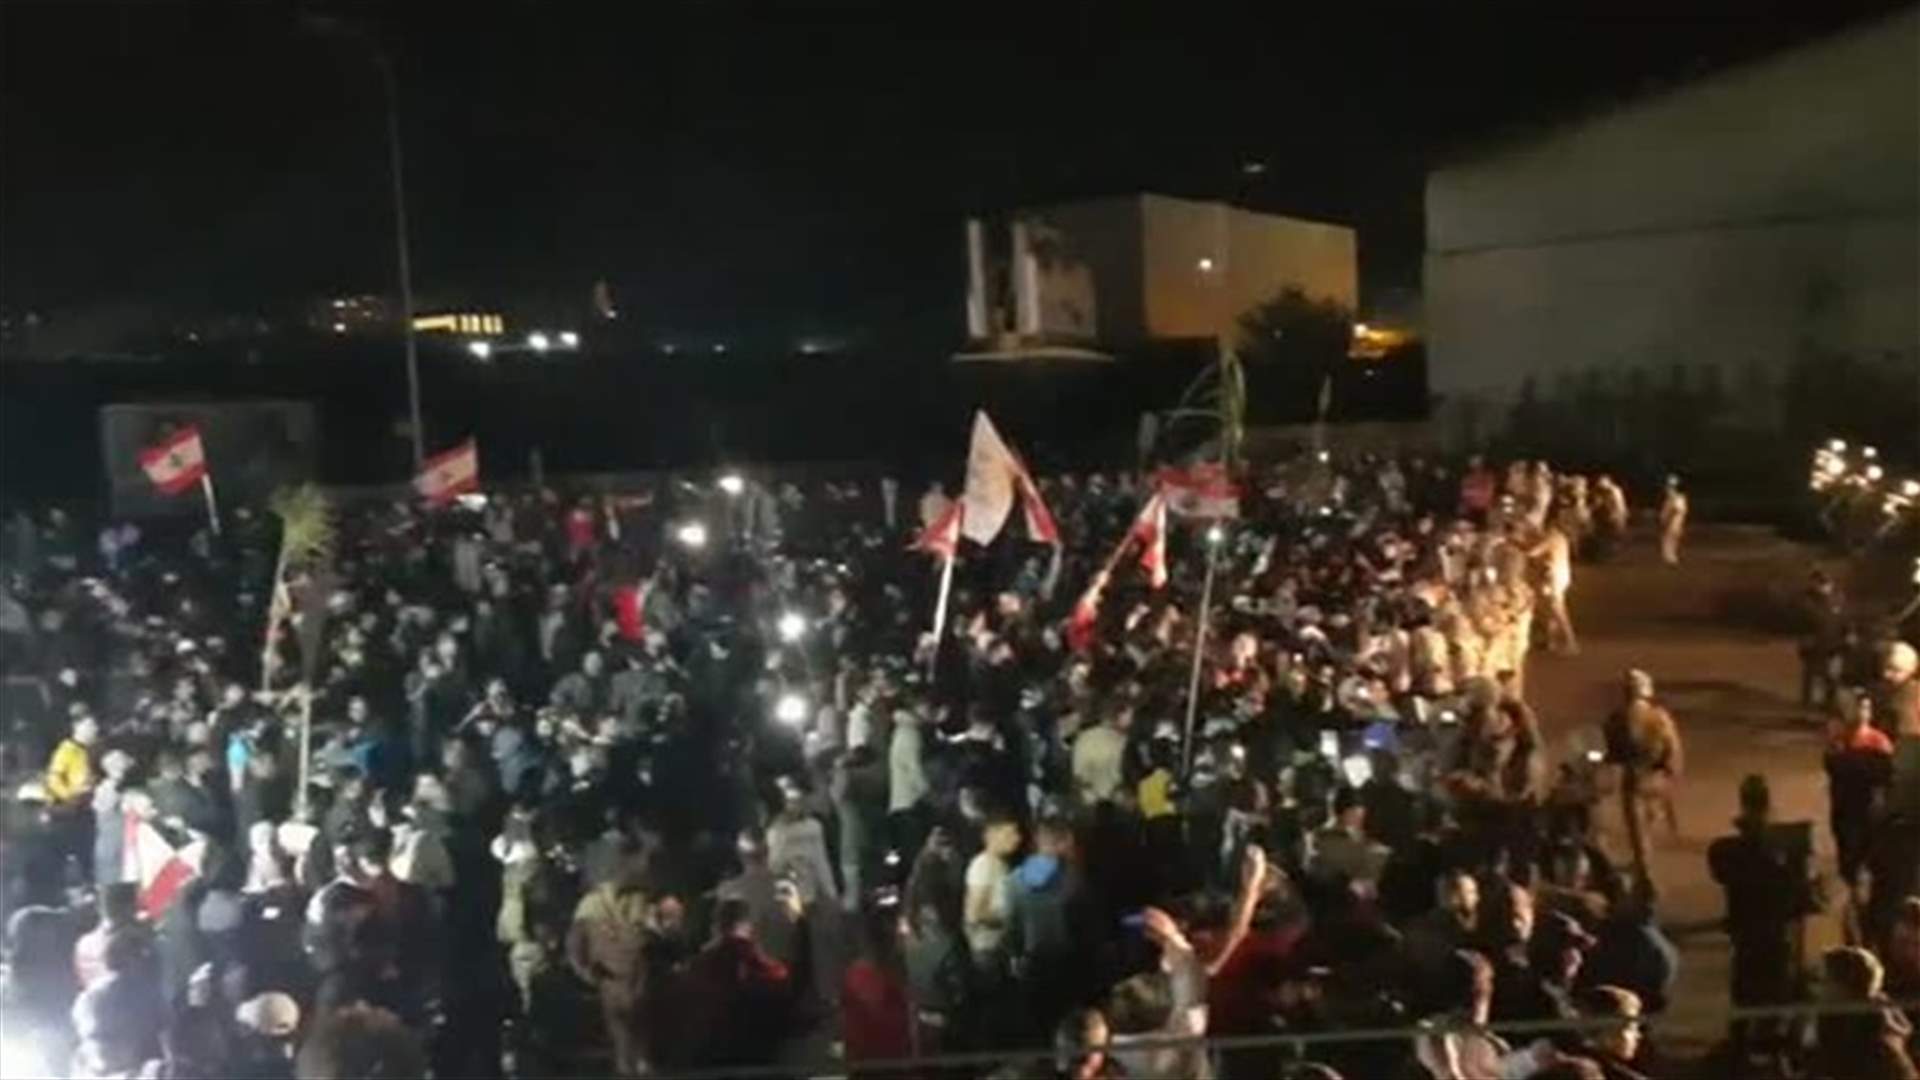 تجمع على اوتوستراد البالما في طرابلس وسط انتشار كثيف للجيش (فيديو)